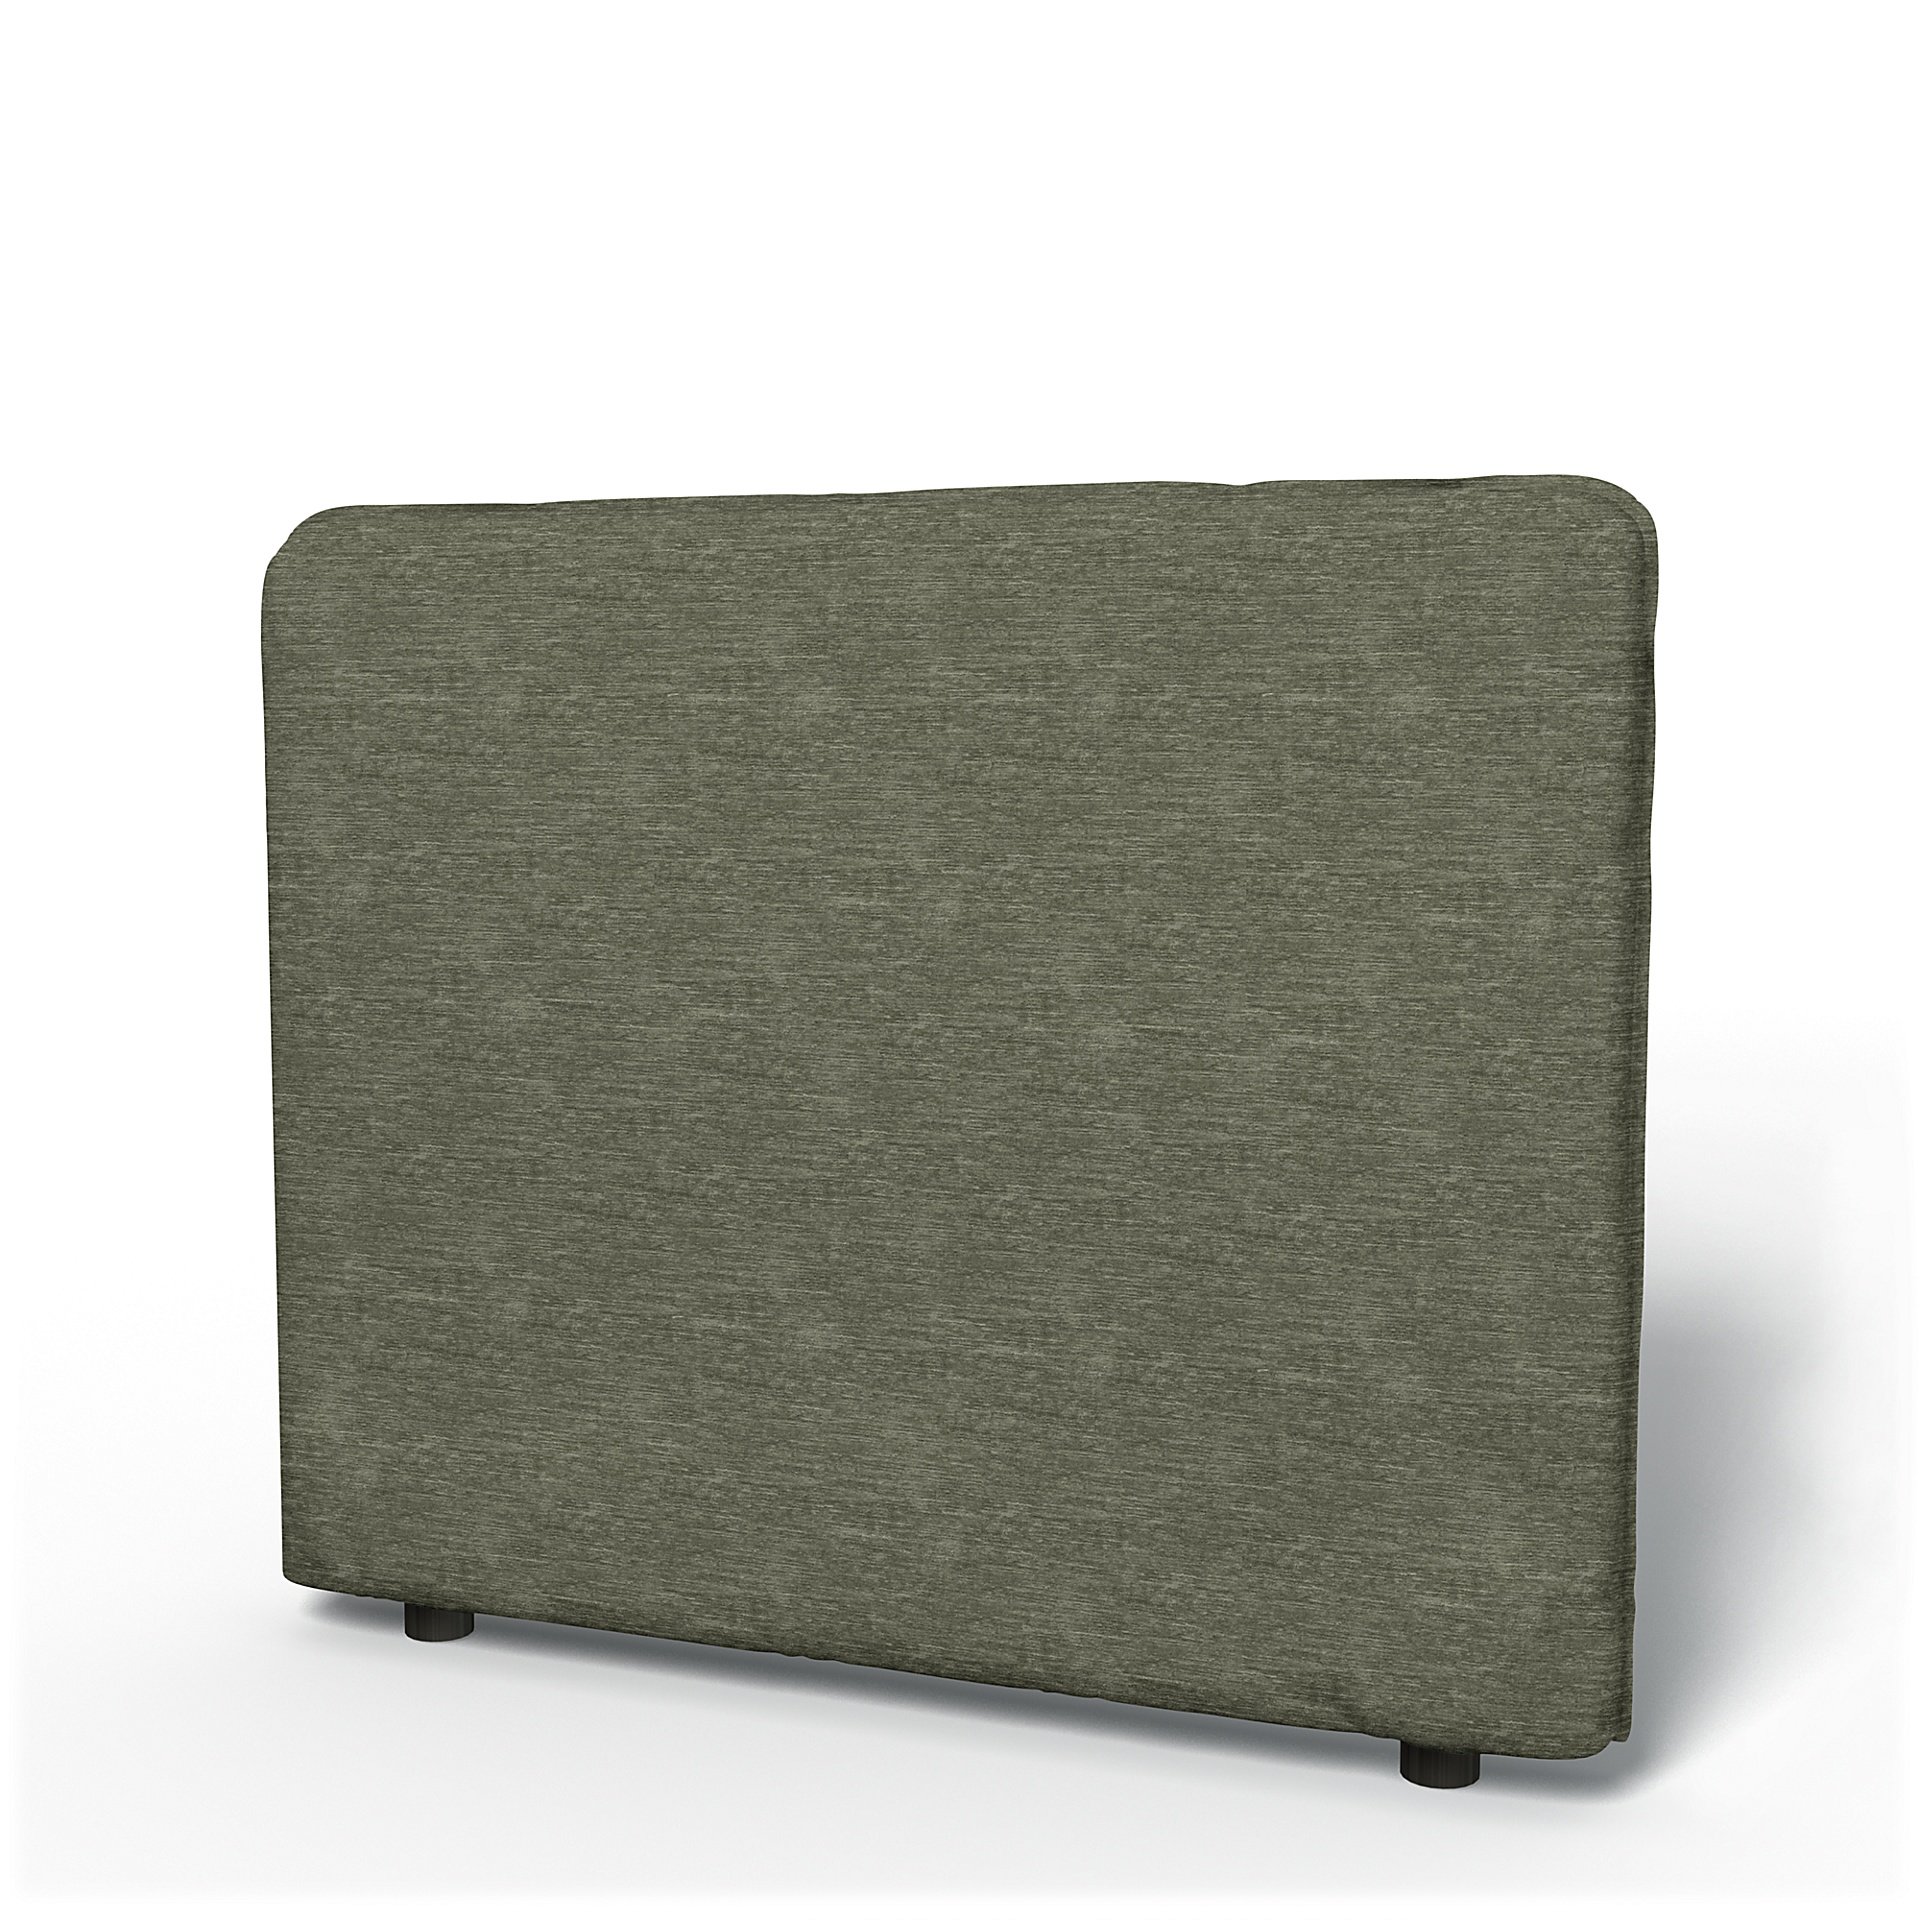 IKEA - Vallentuna Low Backrest Cover 100x80cm 39x32in, Green Grey, Velvet - Bemz